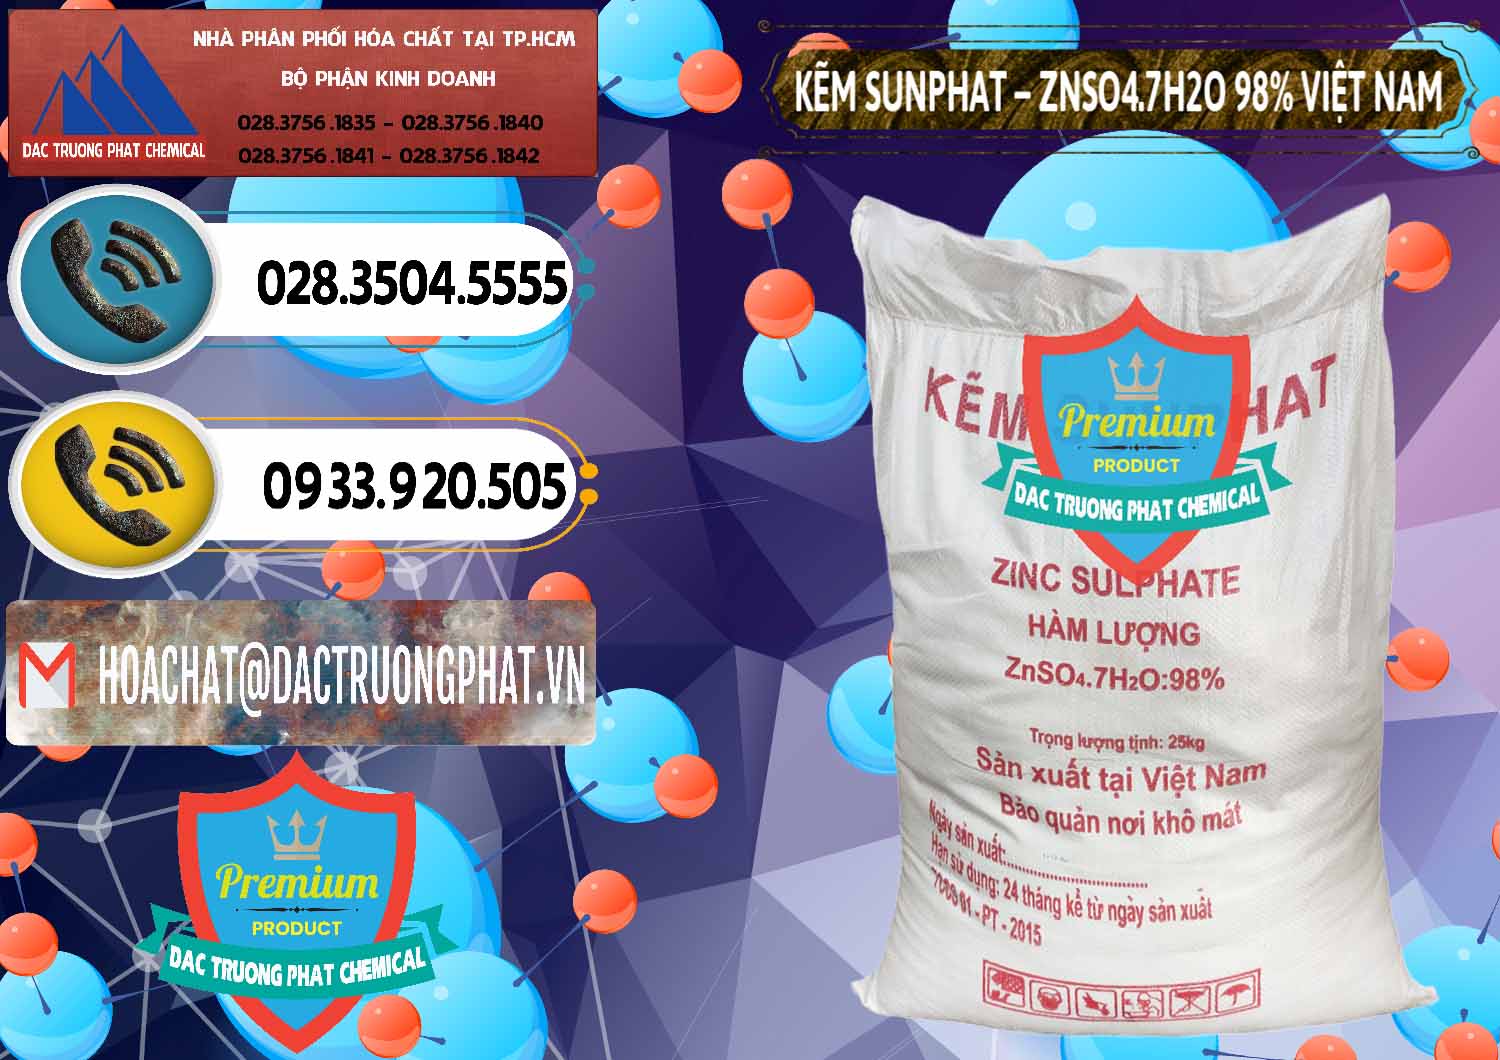 Nhà cung cấp - kinh doanh Kẽm Sunfat – ZNSO4.7H2O Việt Nam - 0189 - Đơn vị chuyên kinh doanh ( cung cấp ) hóa chất tại TP.HCM - hoachatdetnhuom.vn